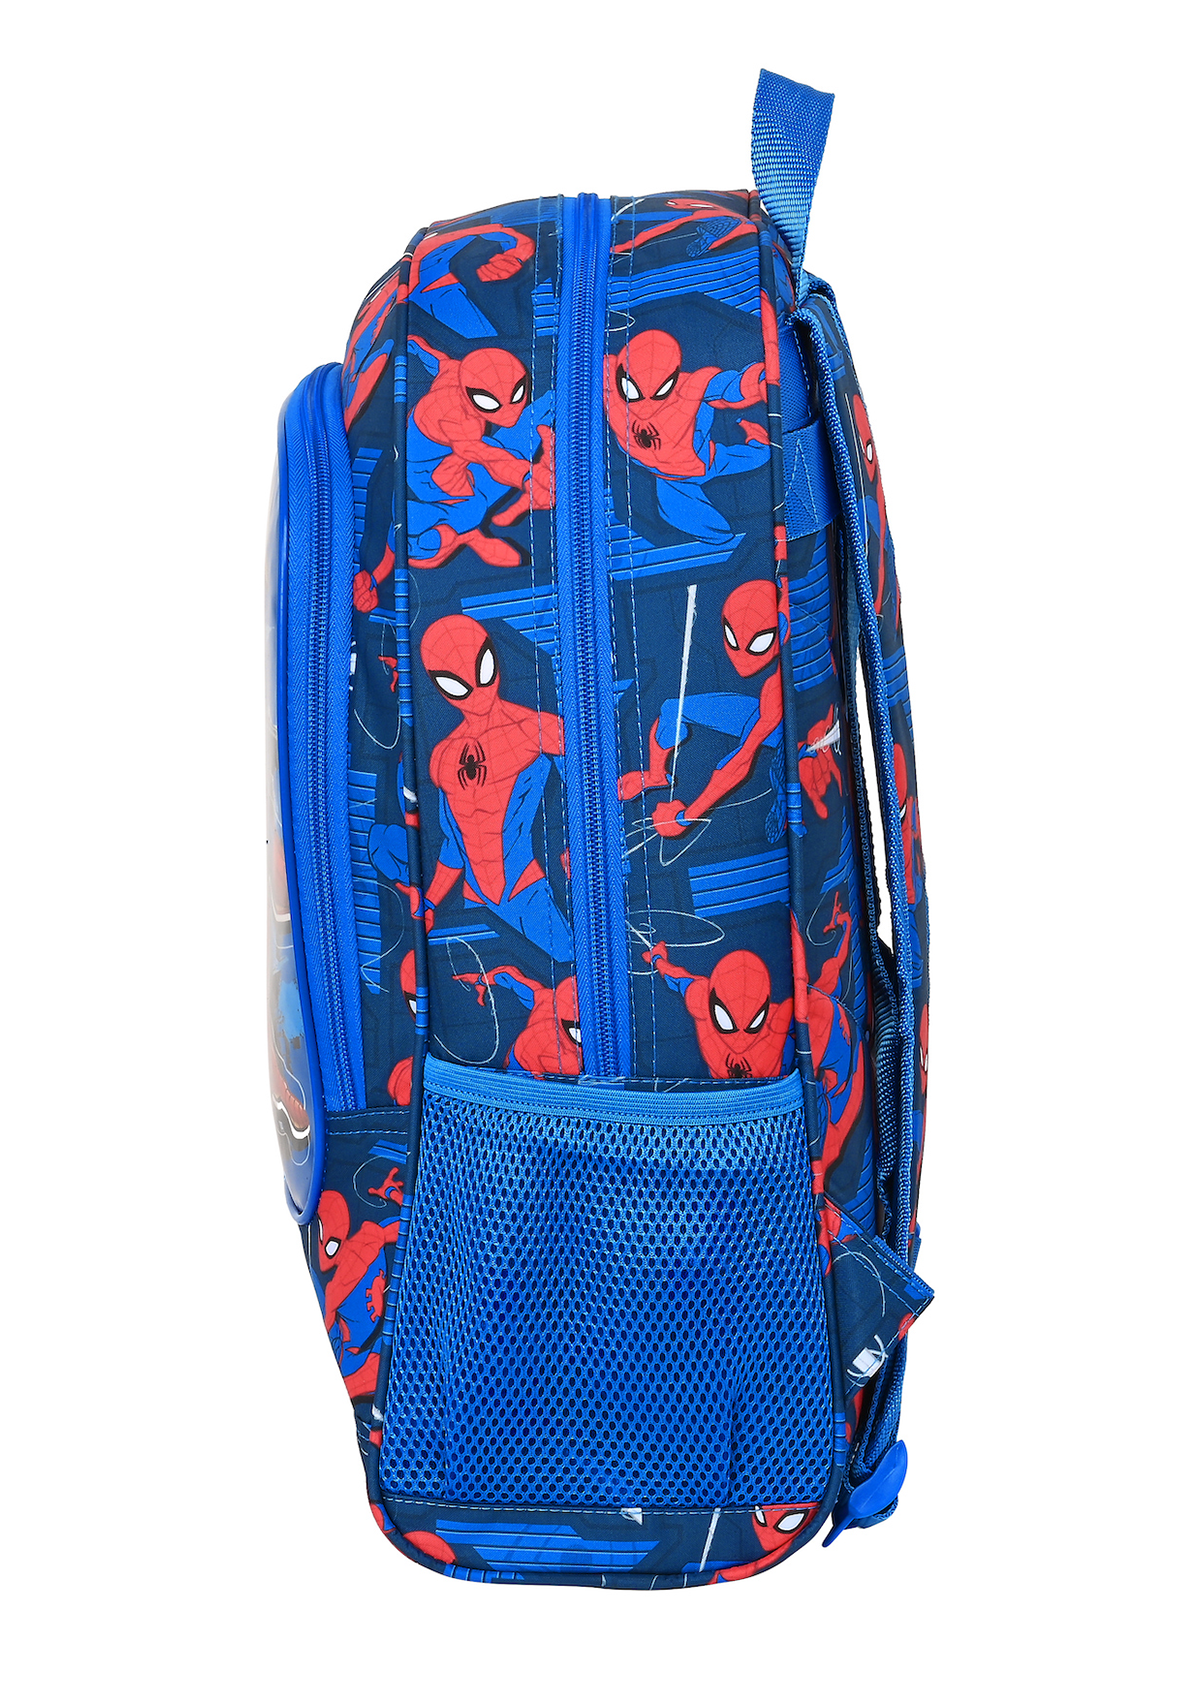 Marvel Spiderman Large Backpack